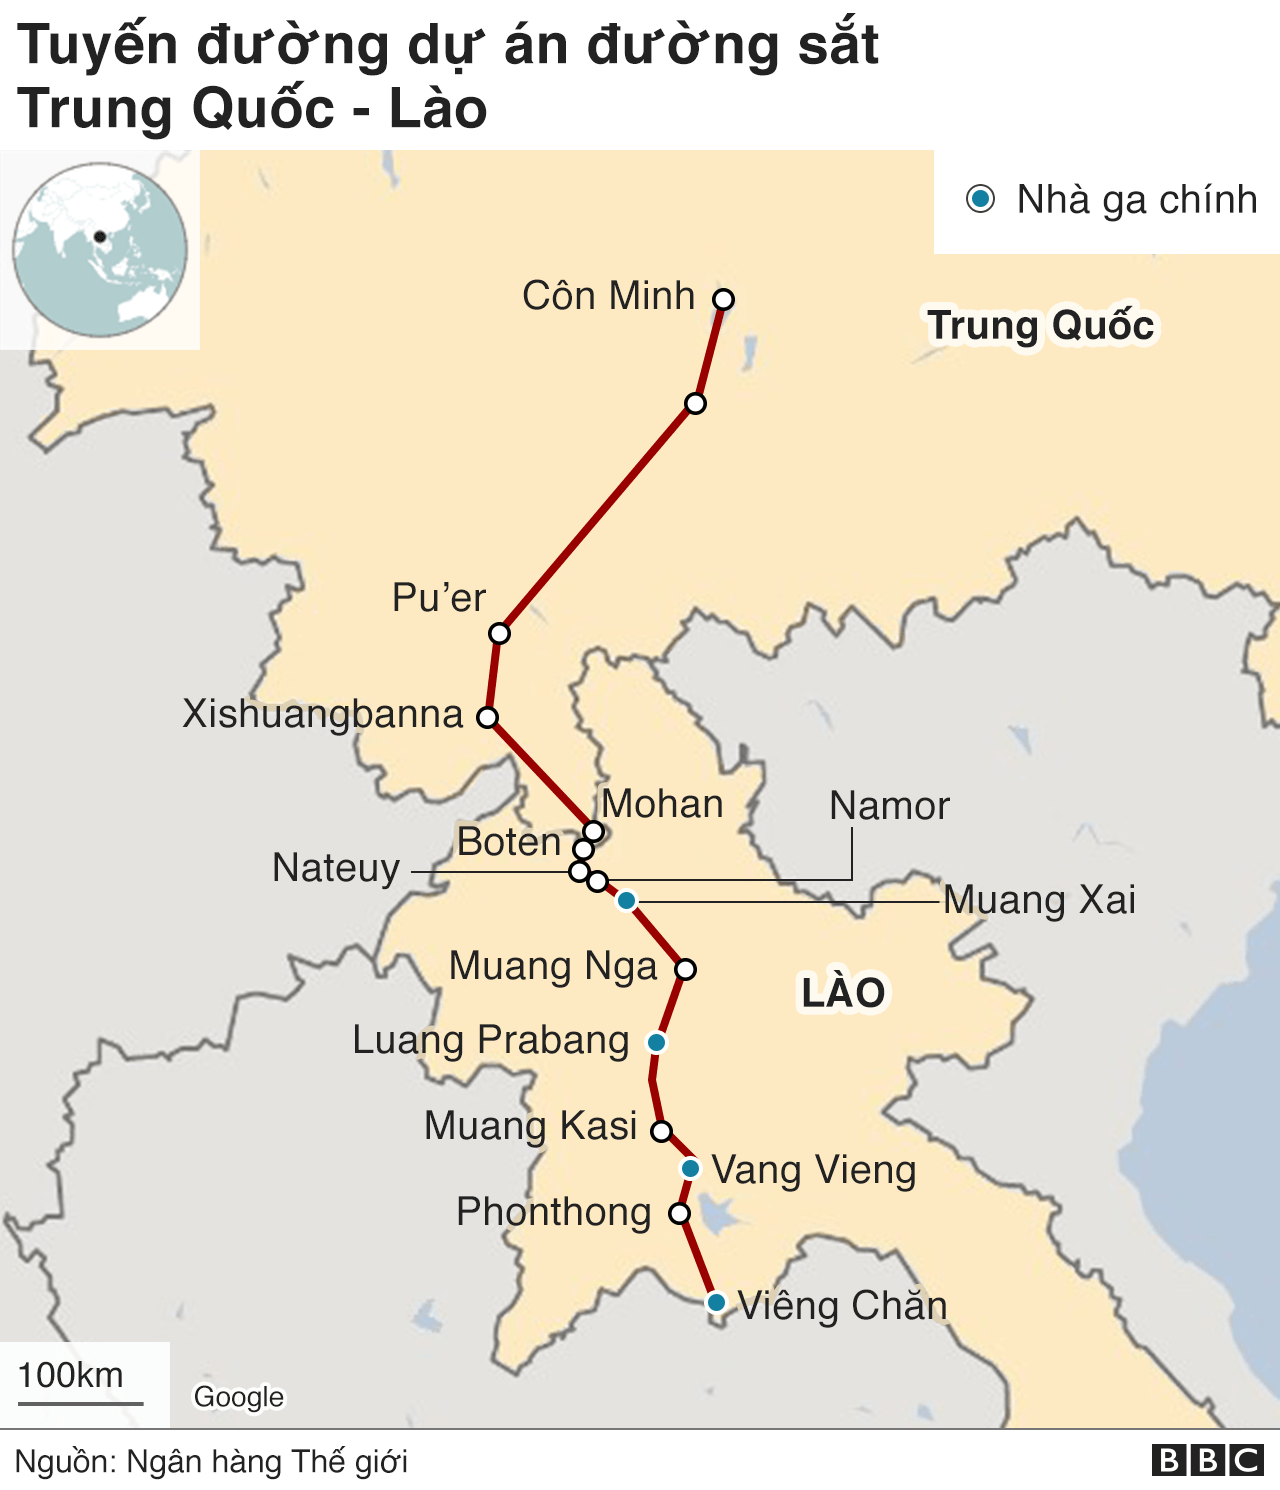 Đông Nam Á: Lào sẽ khai trương đường sắt cao tốc do Trung Quốc xây - BBC  News Tiếng Việt